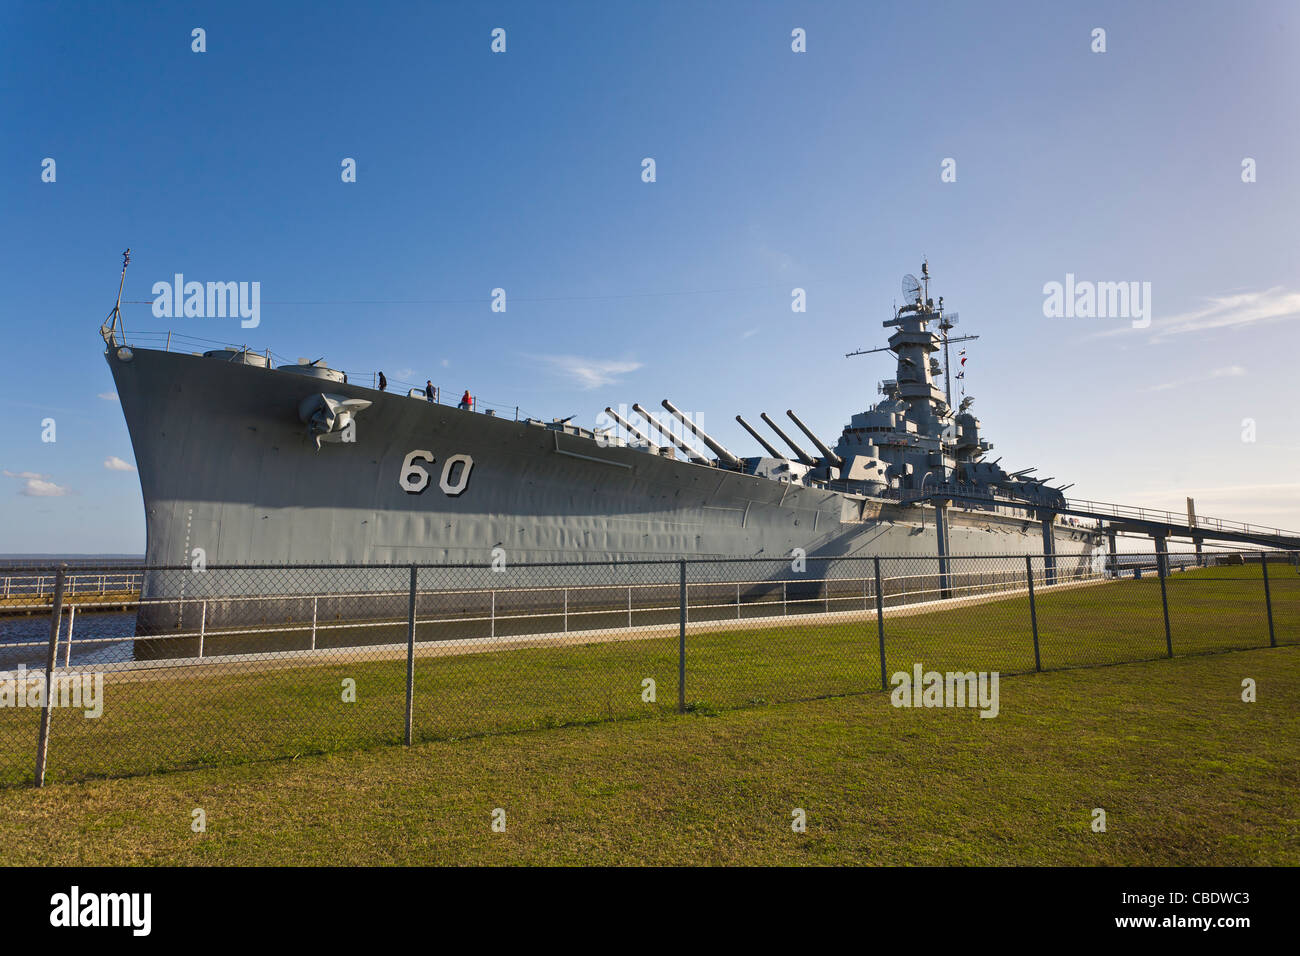 USS Alabama Battleship Memorial Park attraction touristique à Mobile en Alabama Banque D'Images